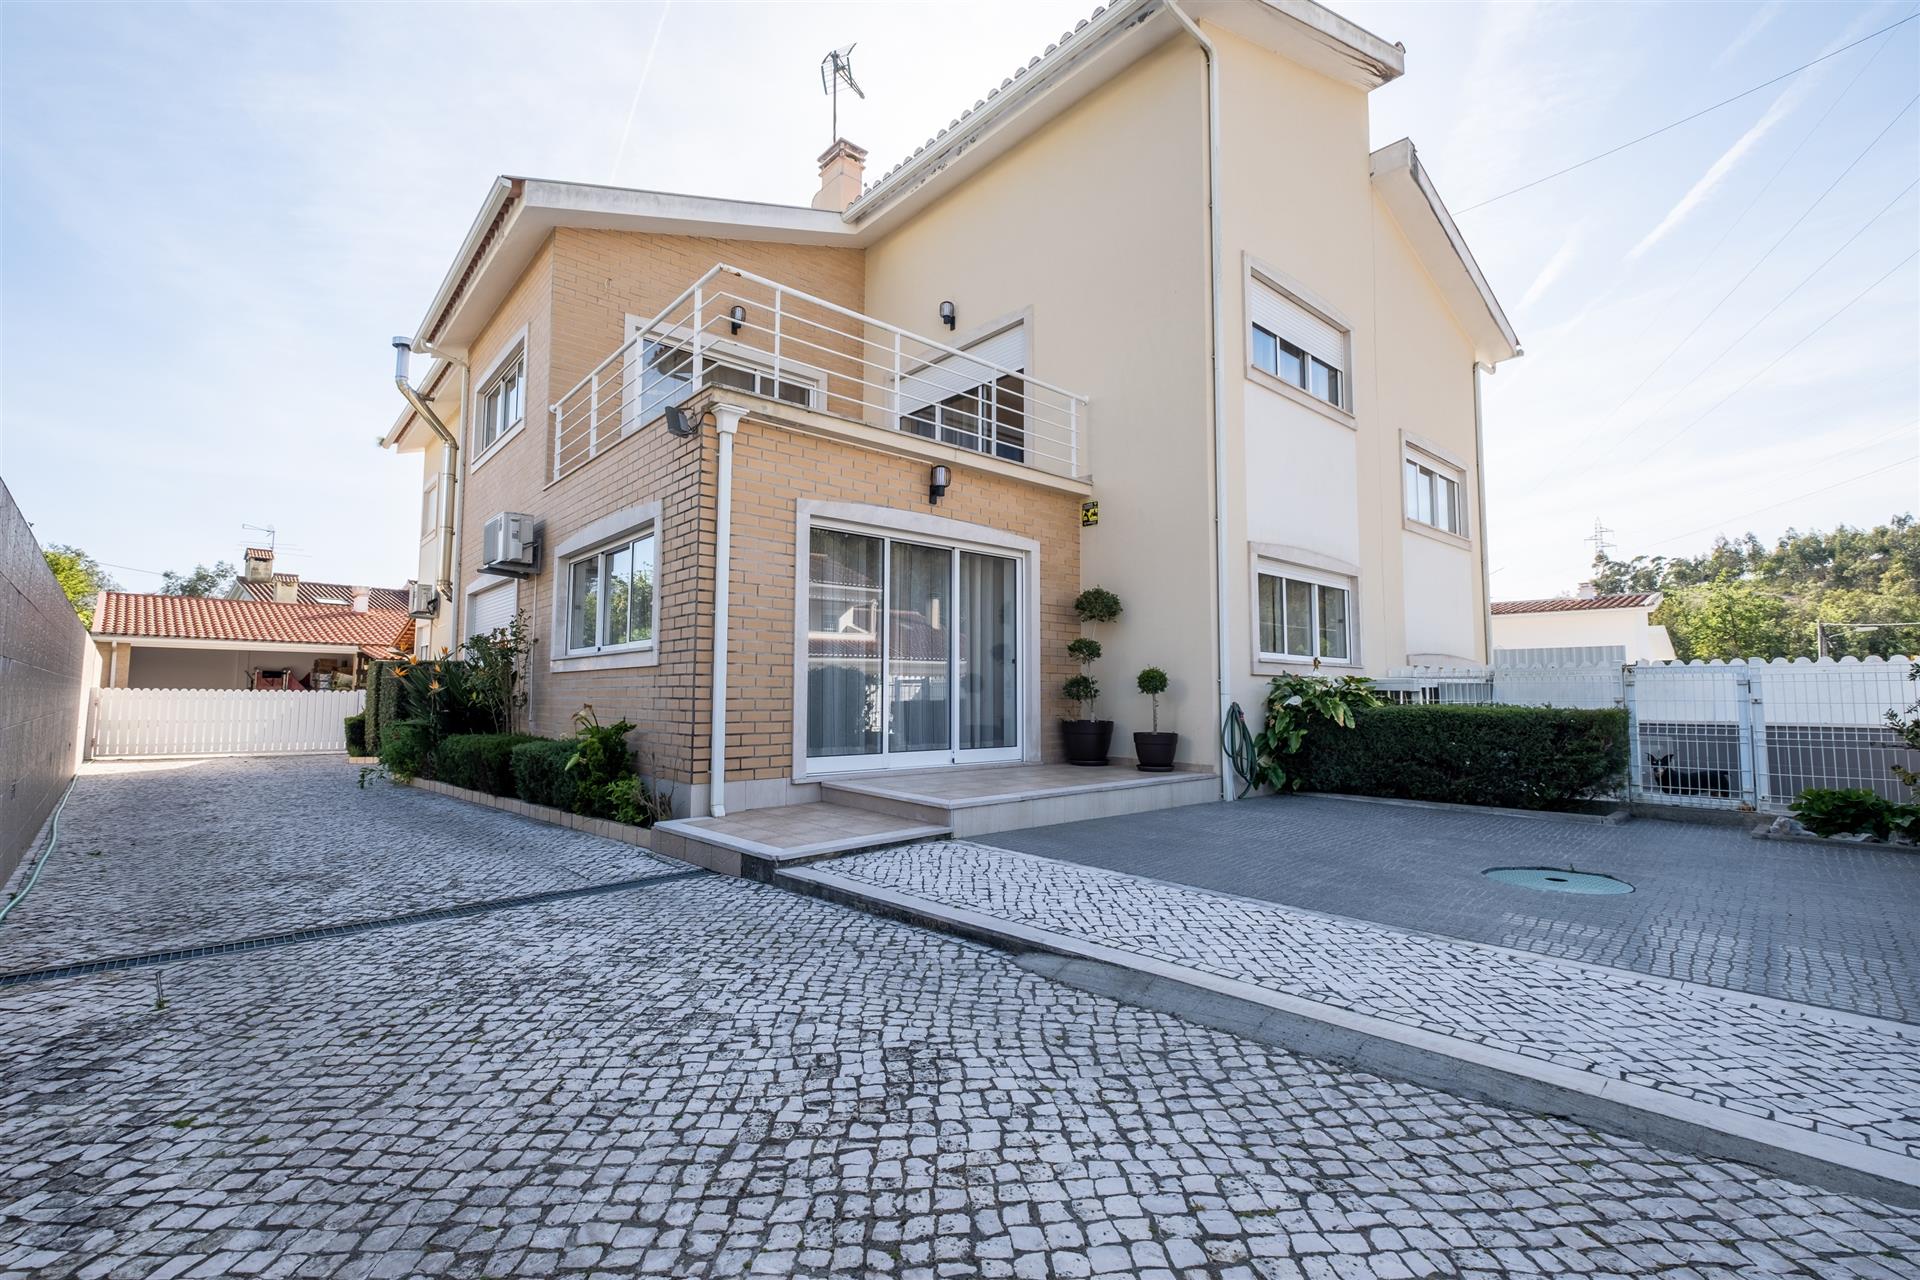 Fantastique maison jumelée de 5 chambres à vendre à Antanhol, Coimbra